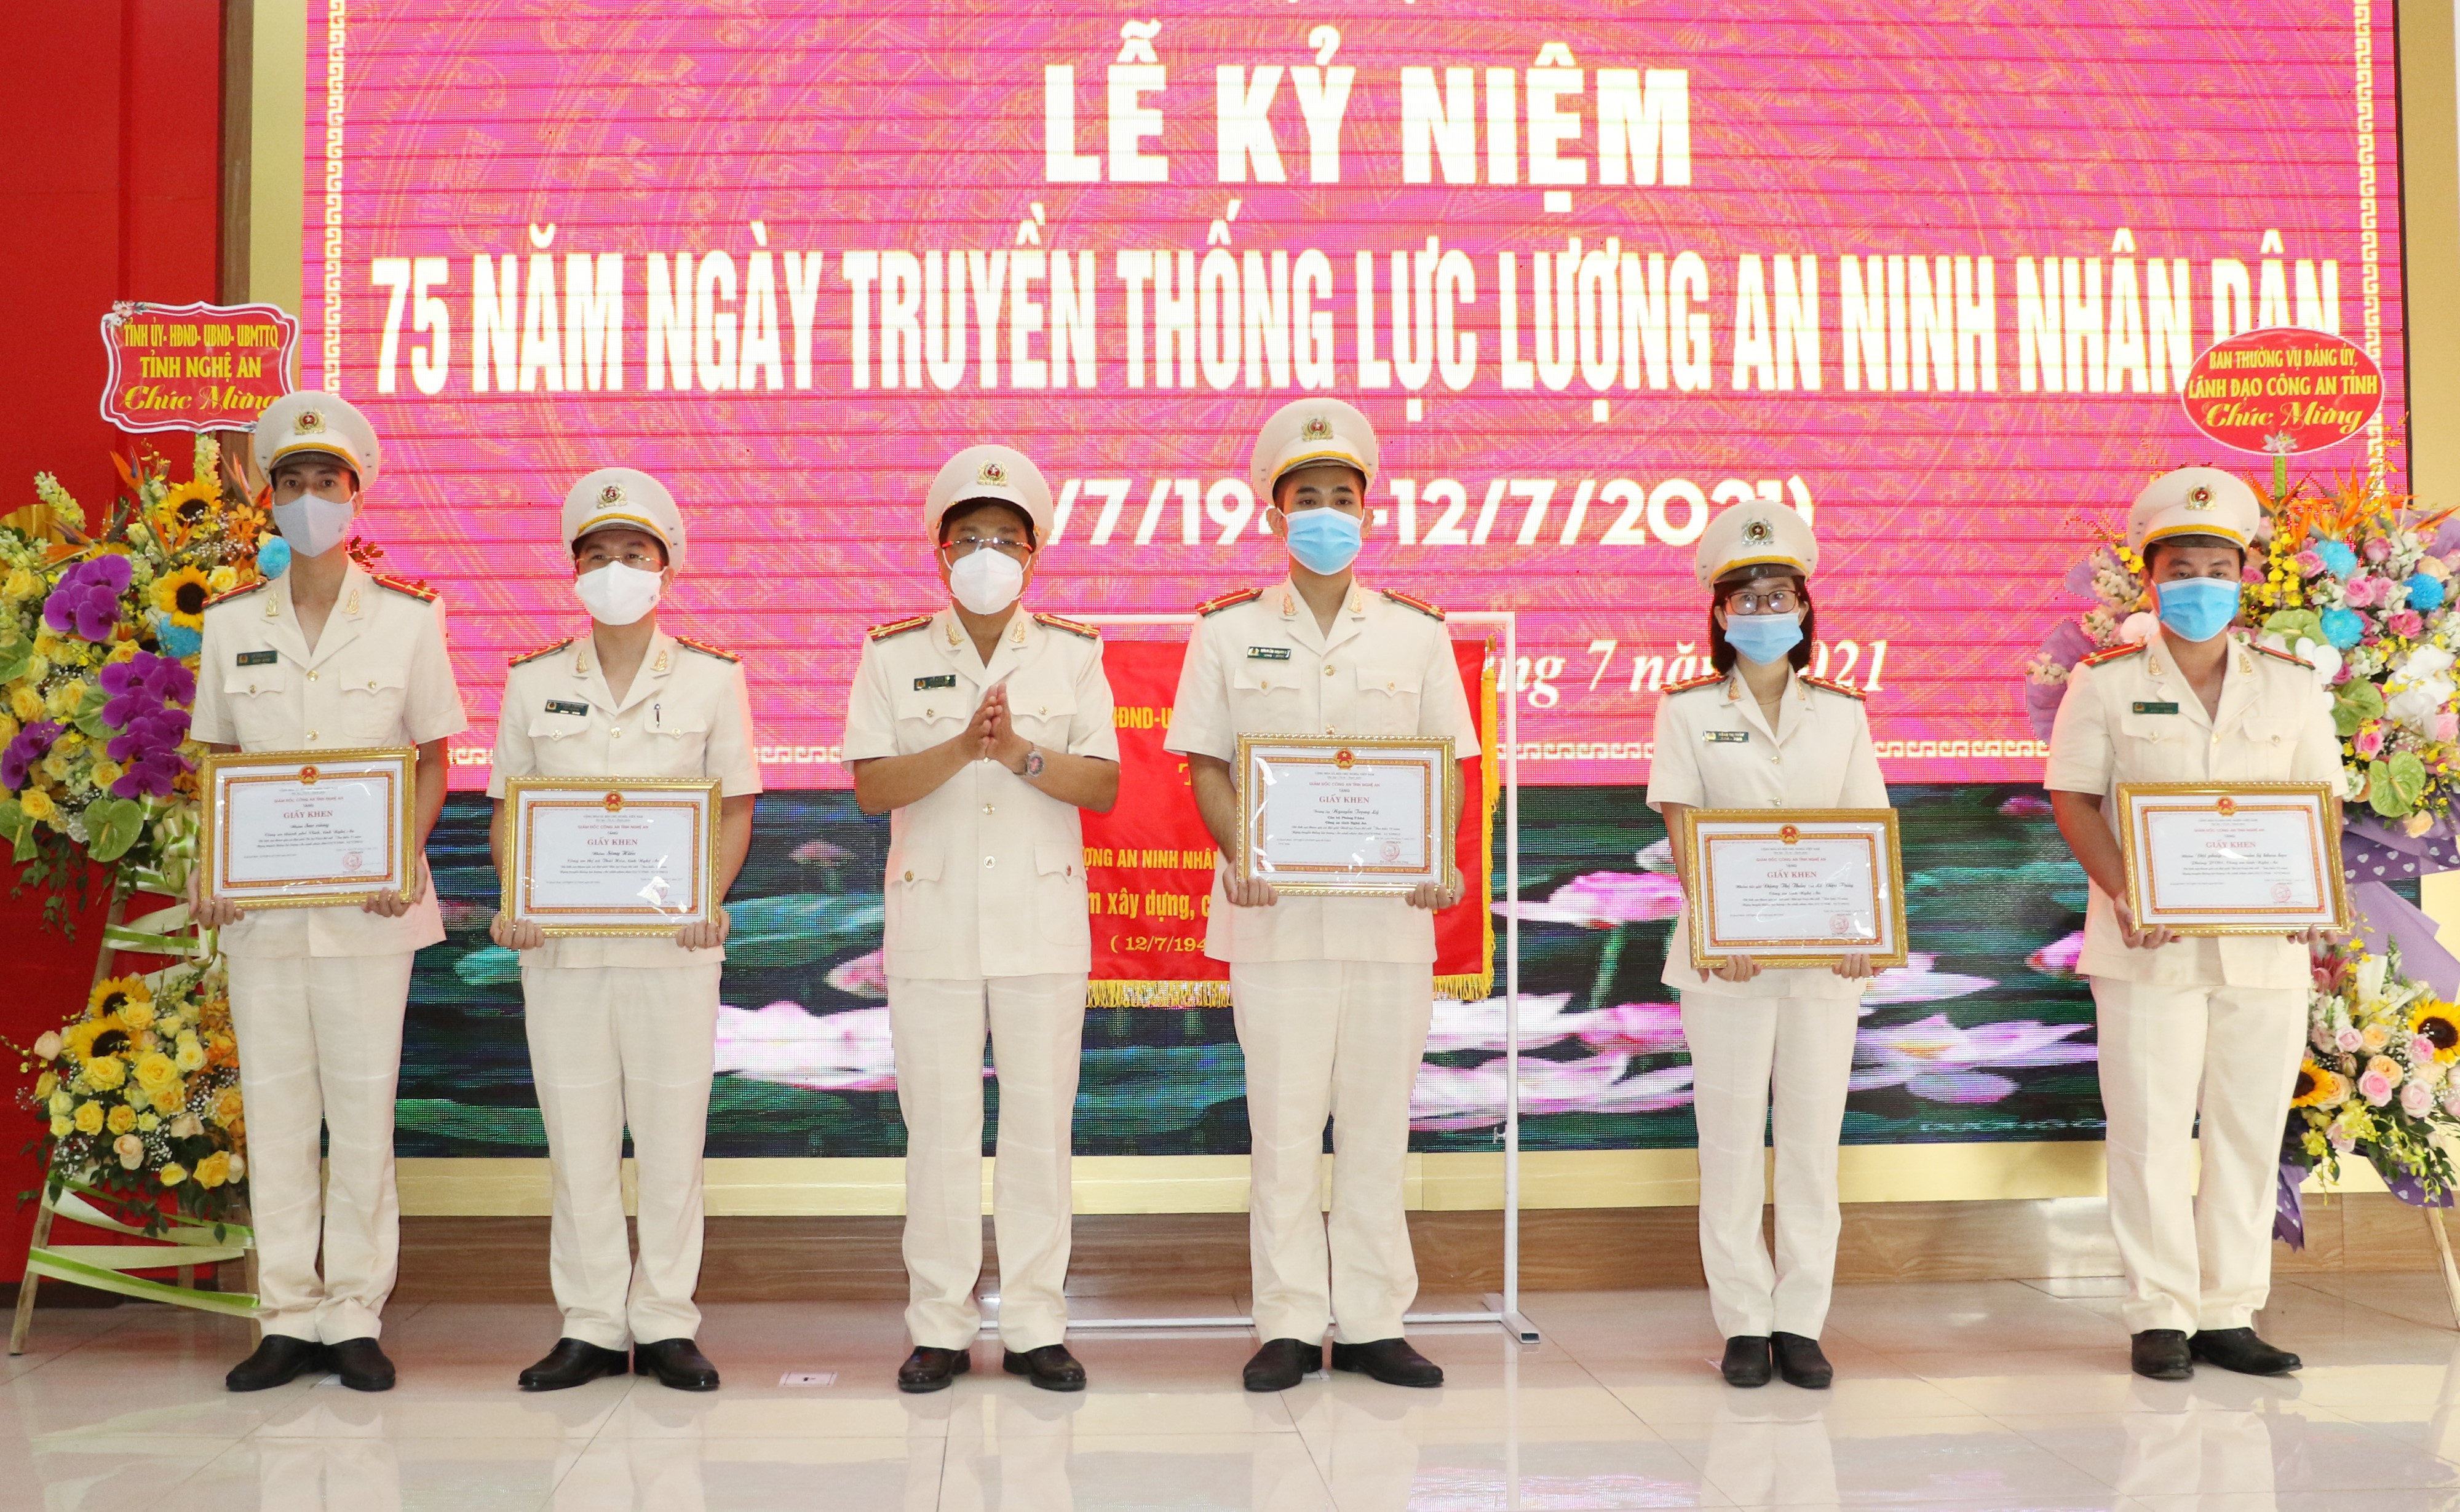  Đại tá Hồ Văn Tứ, Phó Giám đốc Công an tỉnh trao giấy khen cho các tác giả, nhóm tác giả đạt giải trong cuộc thi tìm hiểu 75 năm truyền thống an ninh nhân dân Việt Nam.